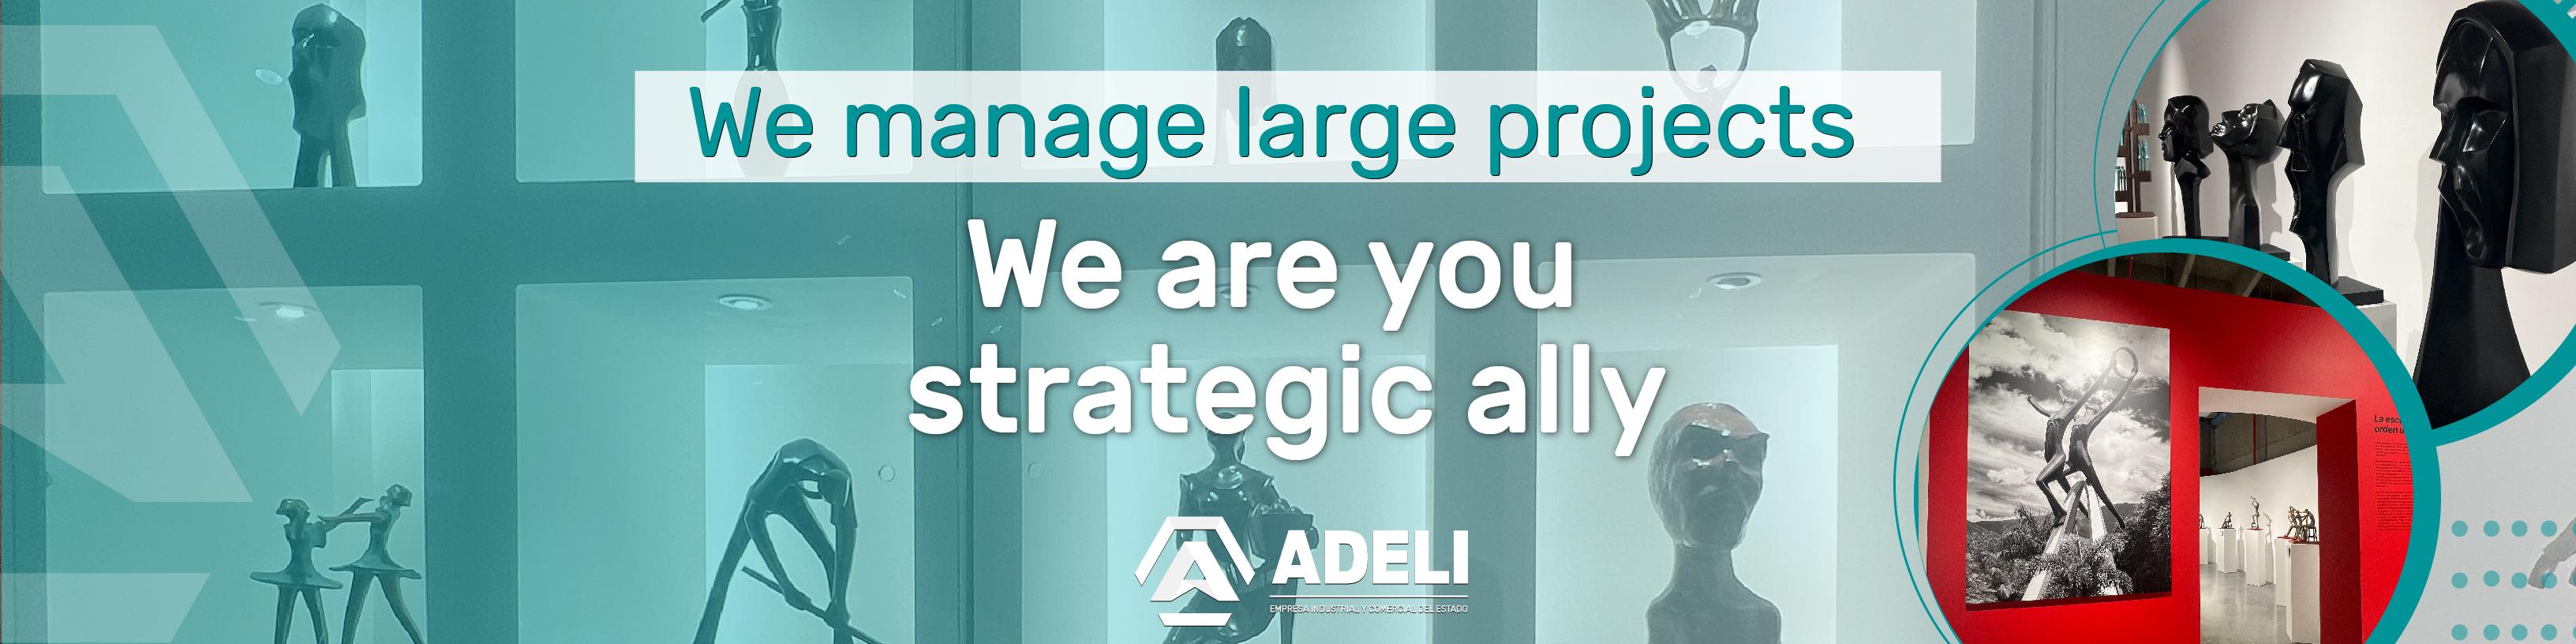 Gerenciamos grandes proyectos ¡somos tu aliado estratégico!